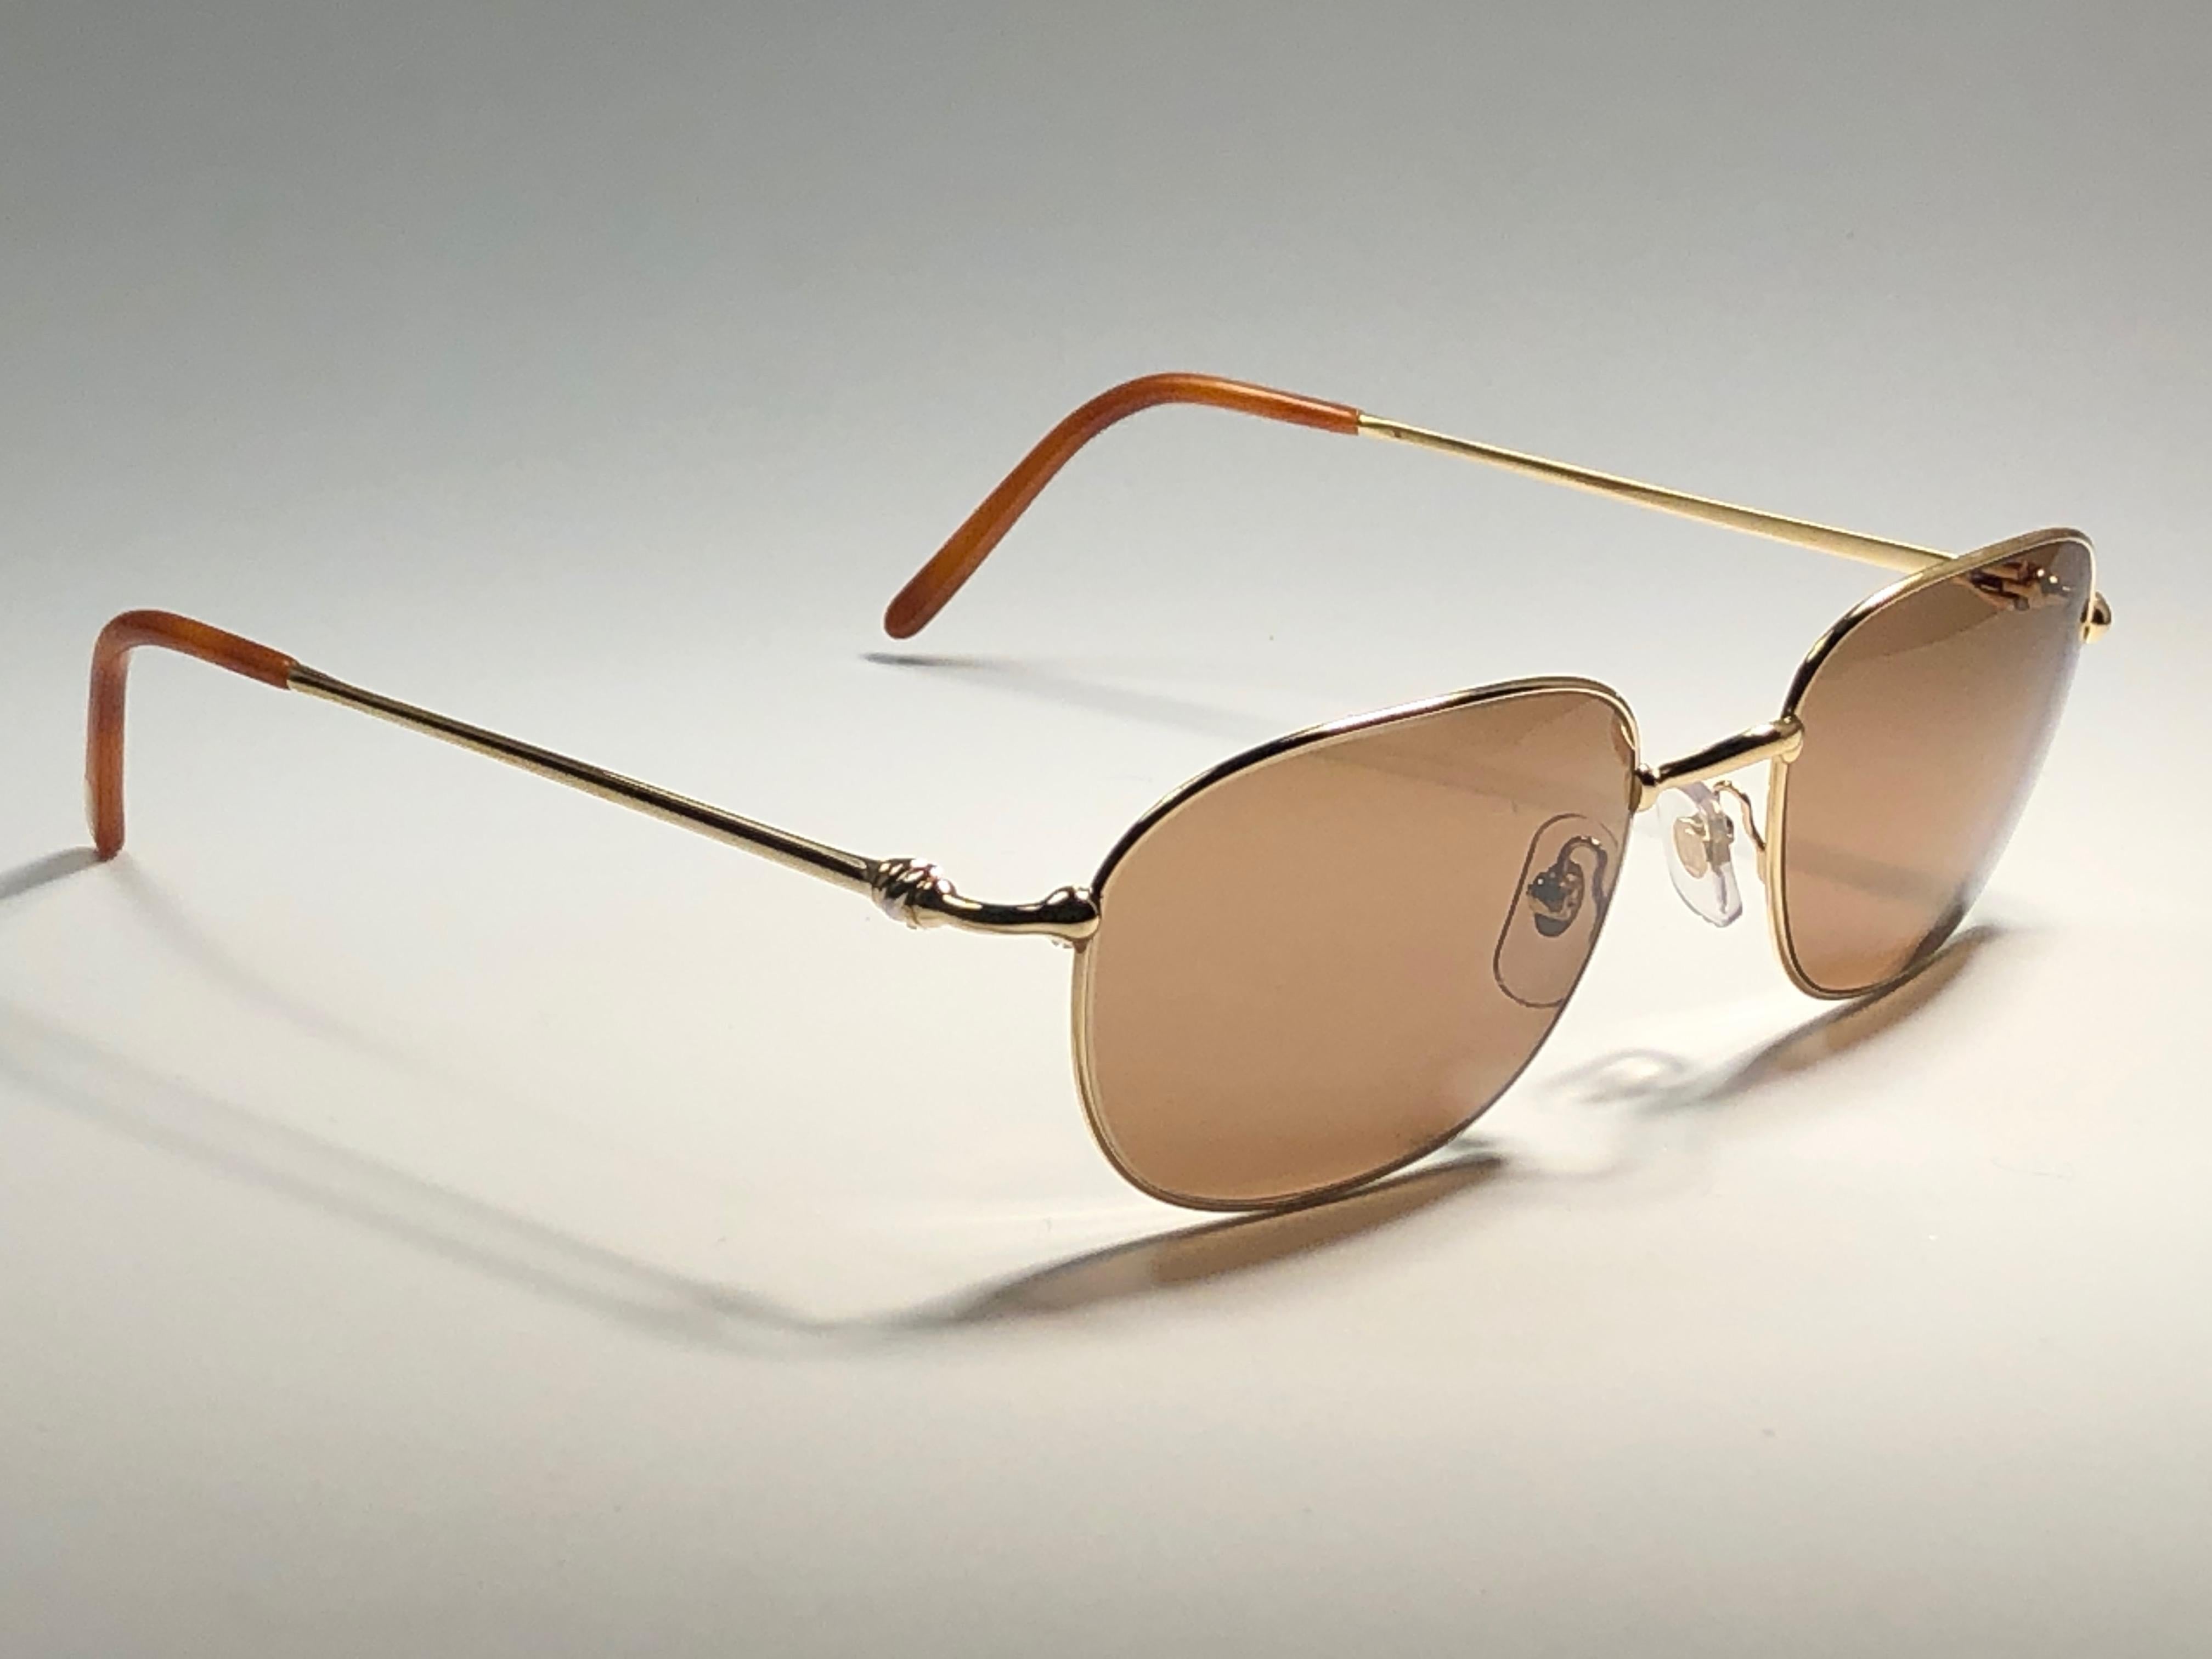 New Vintage Cartier Vesta 56mm Gold Plated Frame France 1990 Sunglasses 1